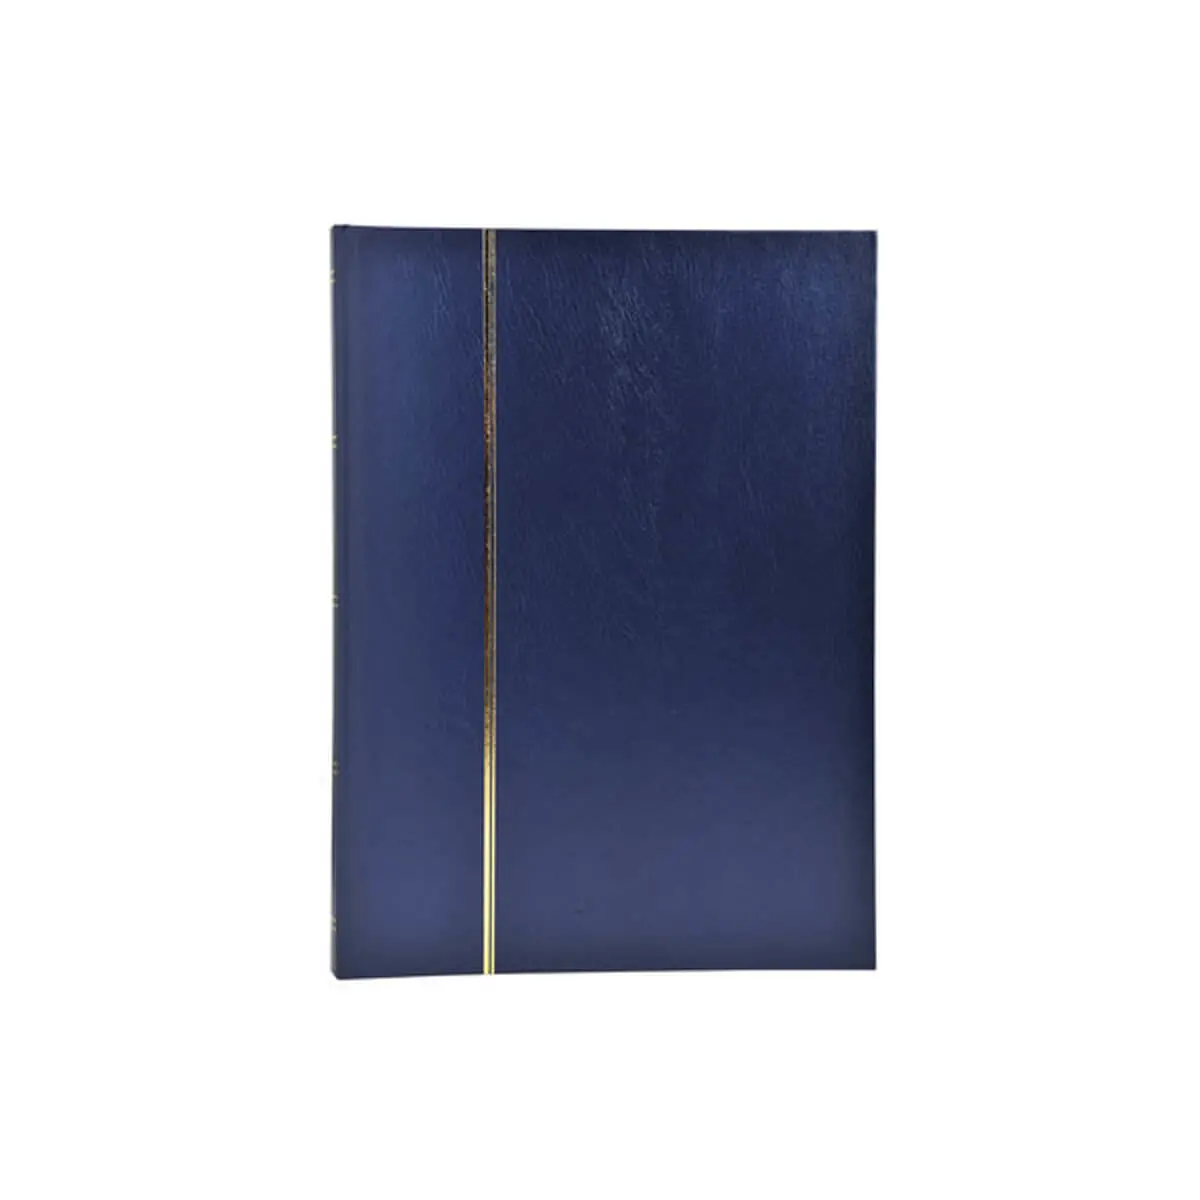 Album de timbres simili-cuir 48 pages noires - 22,5x30,5 cm - Bleu - EXACOMPTA photo du produit